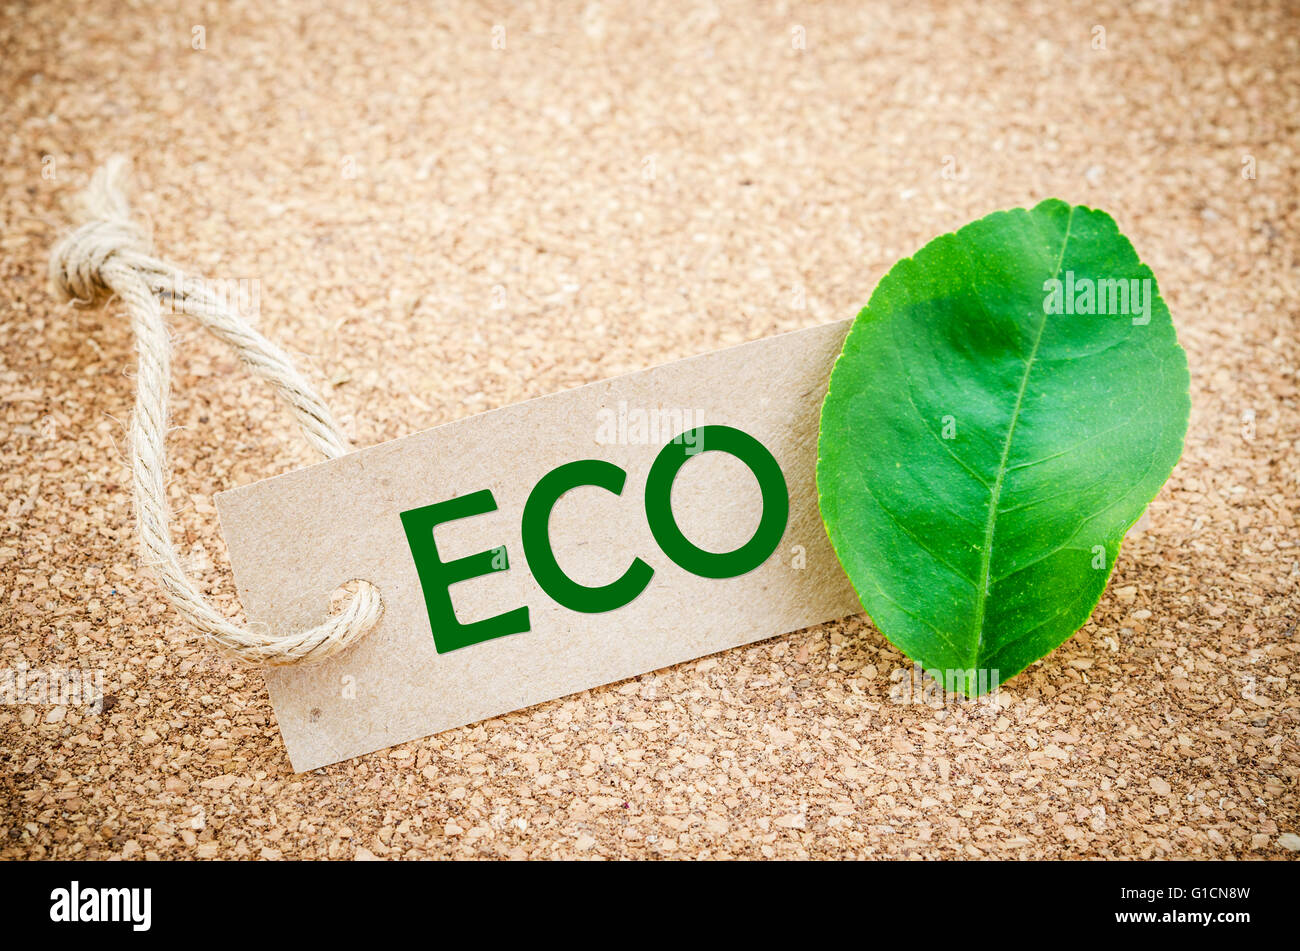 Eco mot sur une étiquette de carton vert, clover leaf, fond en bois Banque D'Images